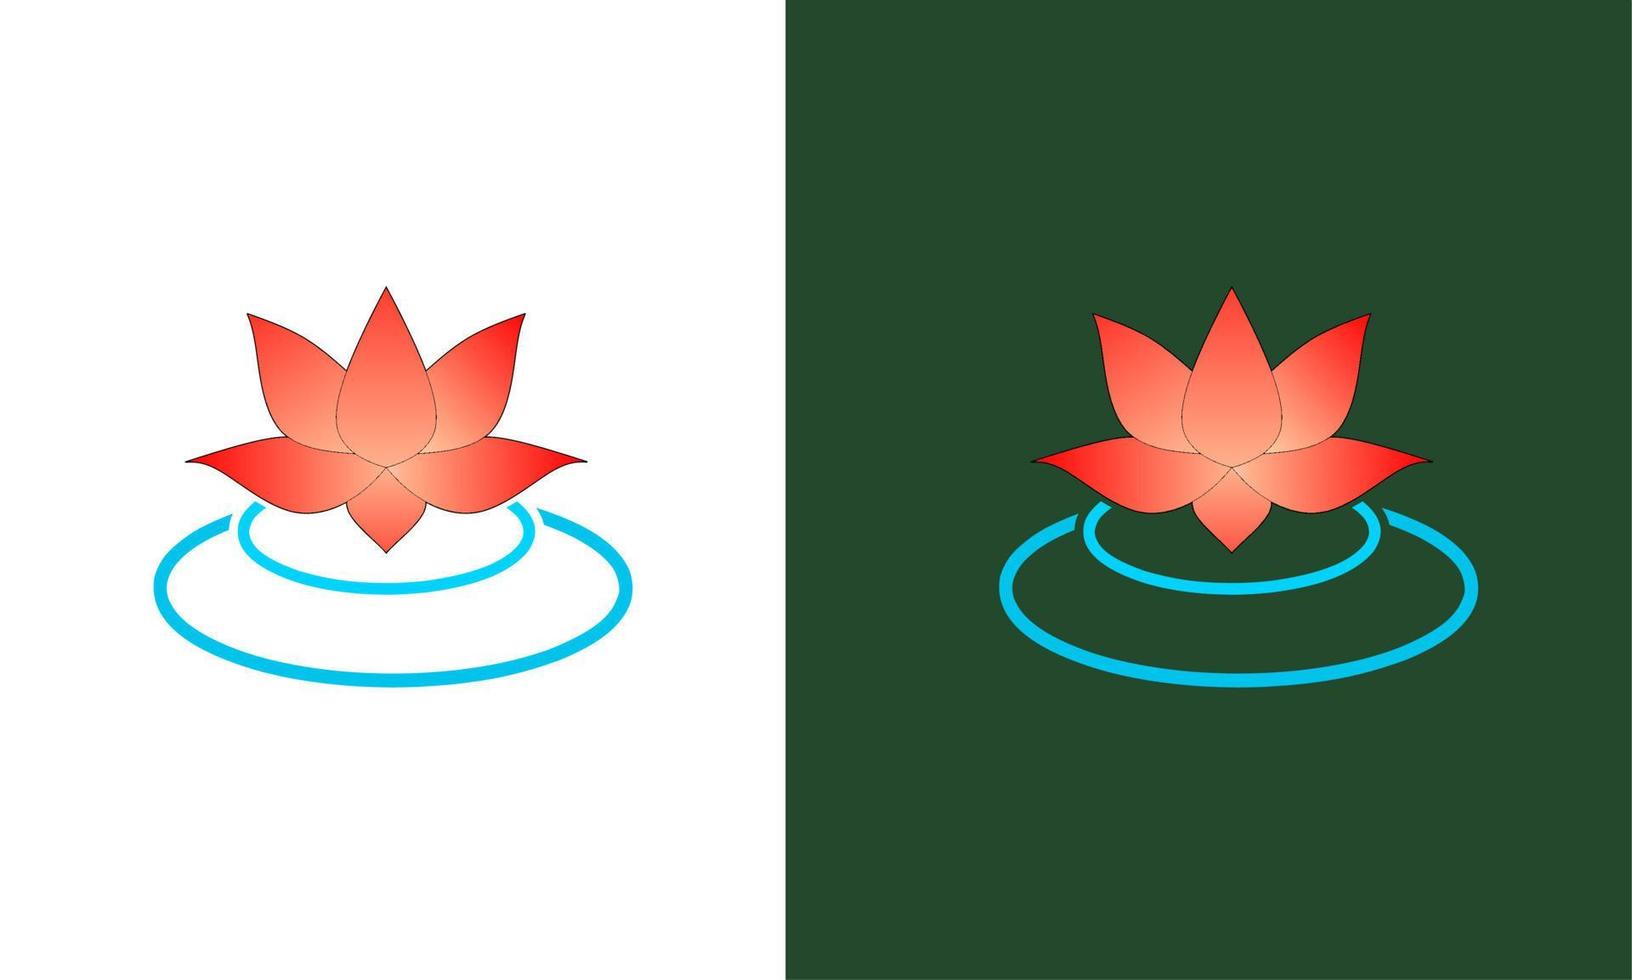 plantilla logo flor de loto en el agua vector